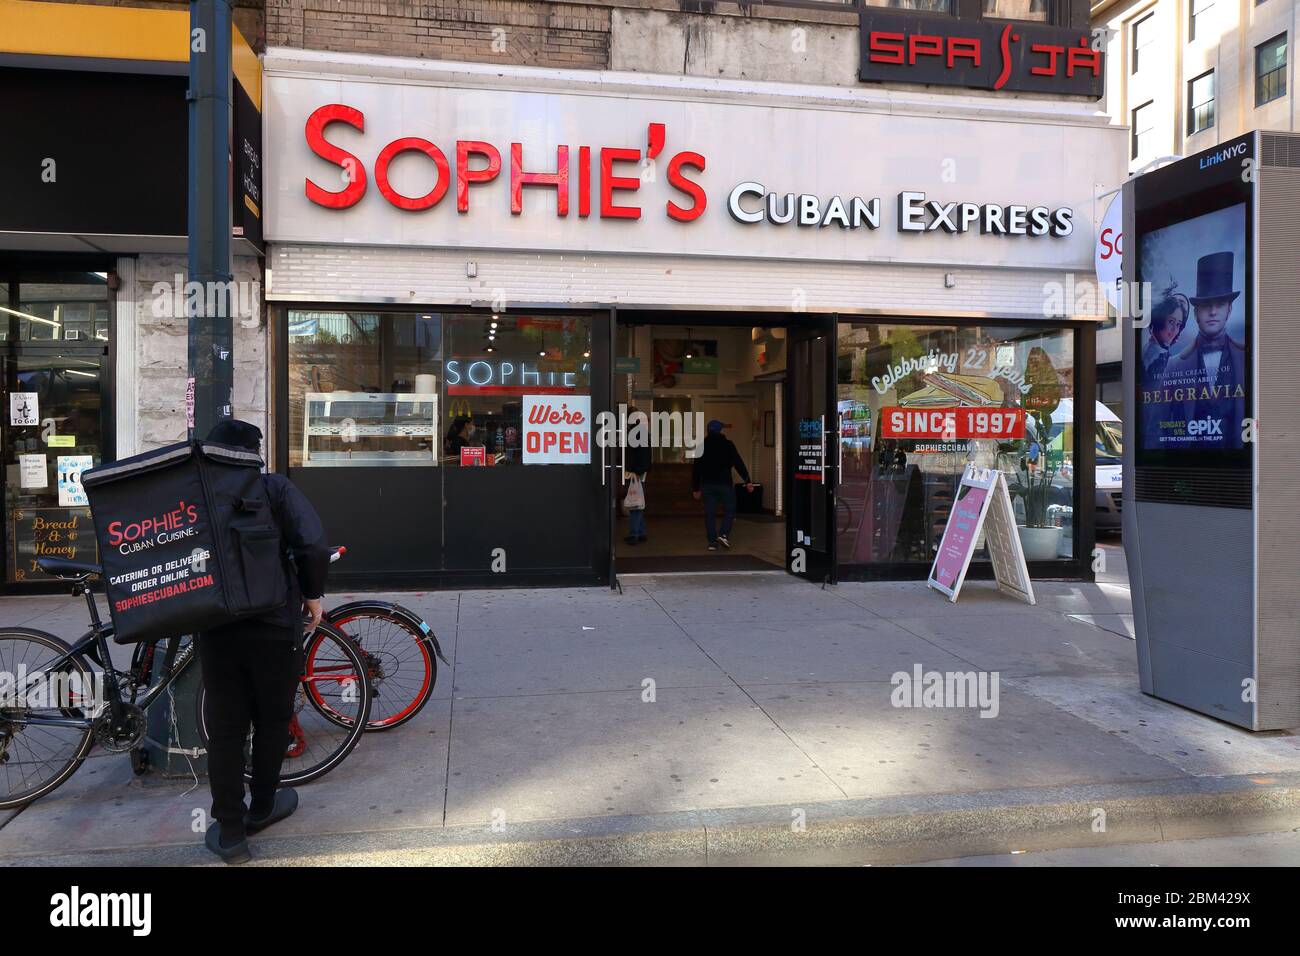 Sophie's Cuban Express, 947 8. Ave, New York, NYC Foto von einem kubanischen Restaurant in Manhattan. Stockfoto